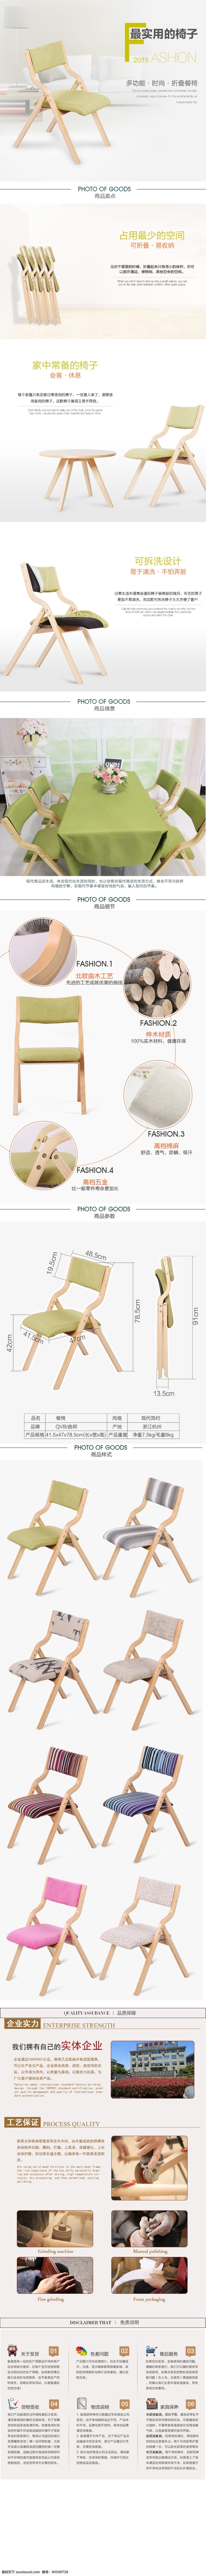 天猫 详情 页 椅子 现代 简约 淘宝素材 淘宝设计 淘宝模板下载